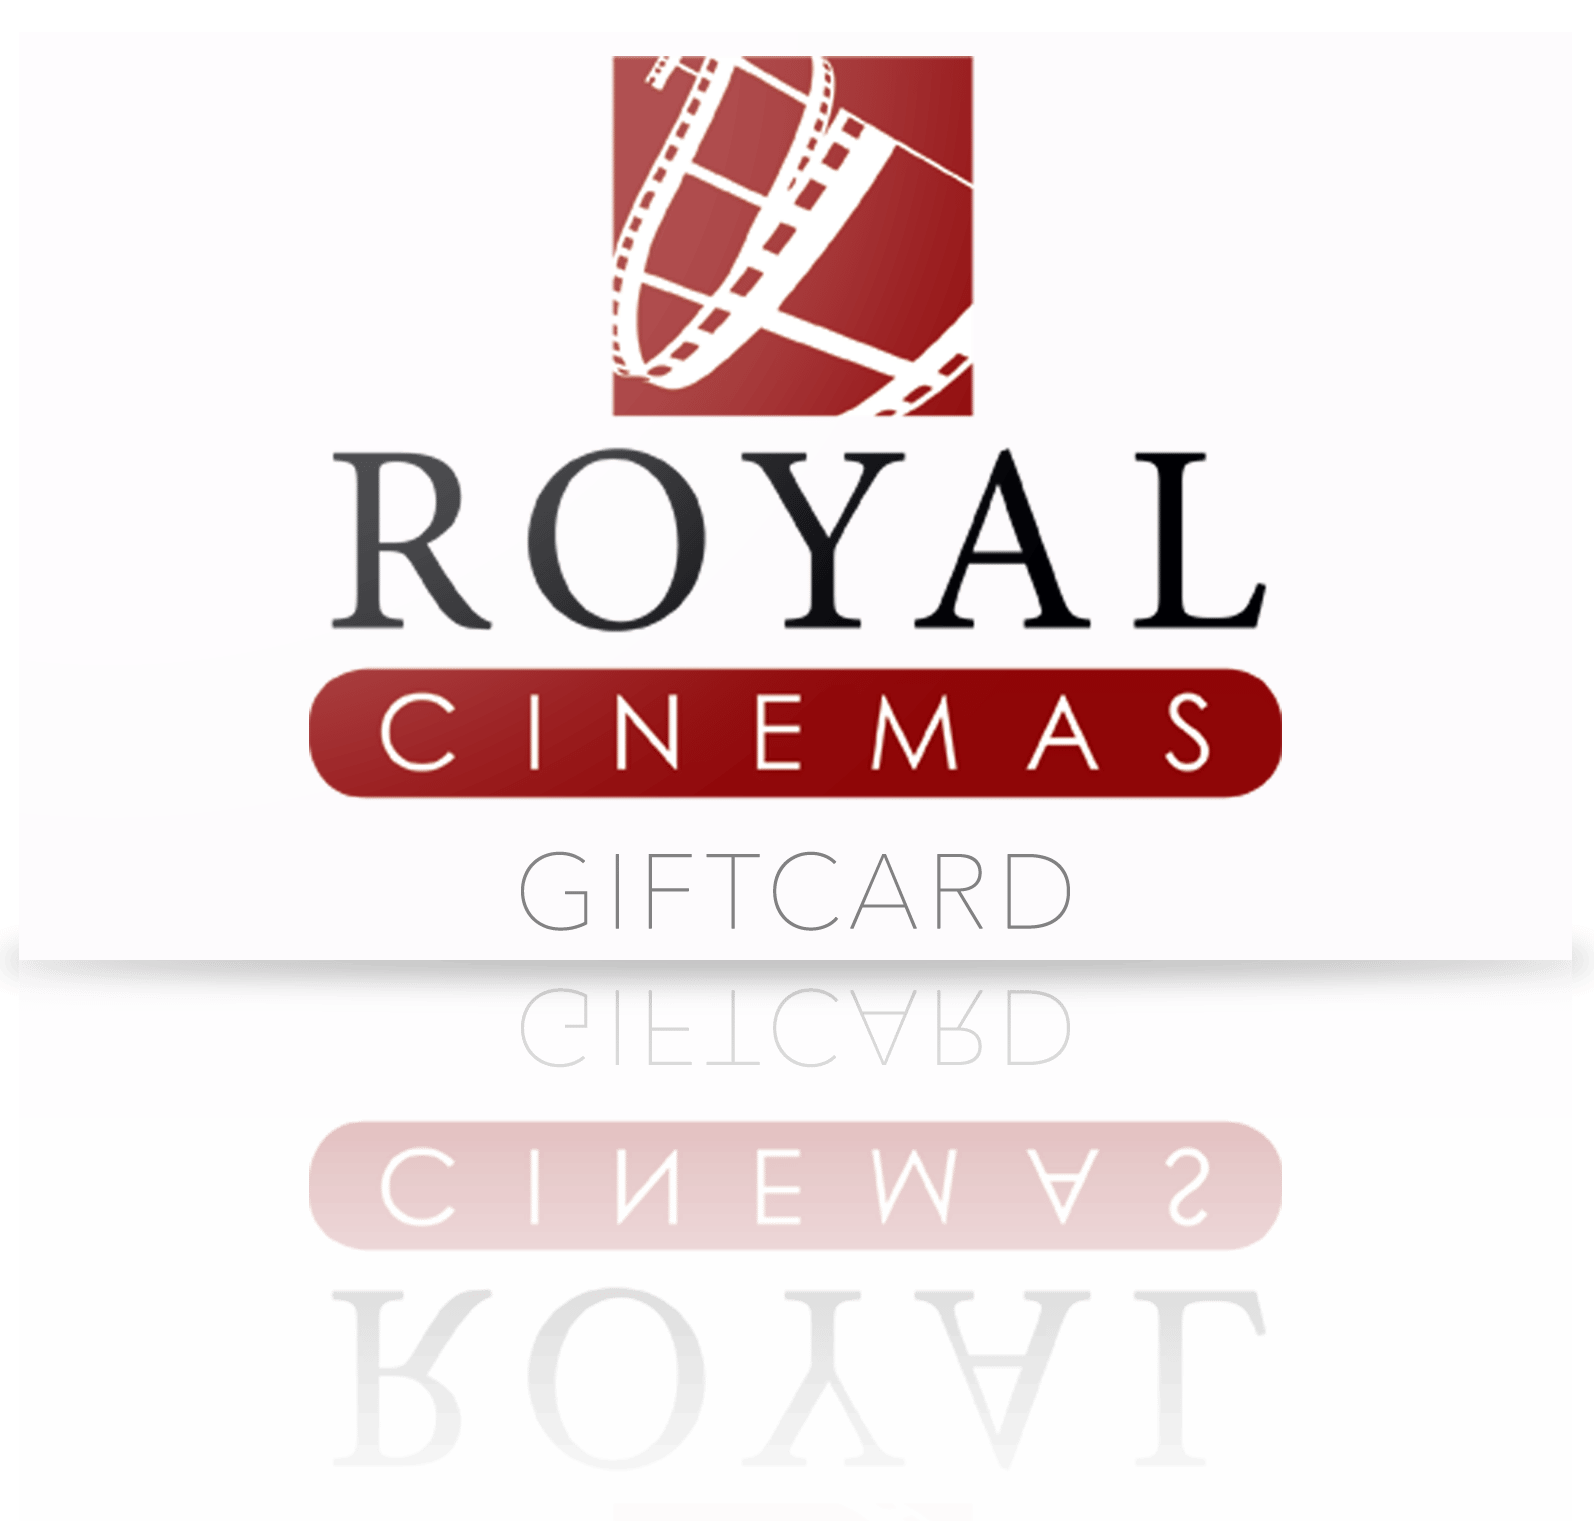 Royal Cinemas Gift Card